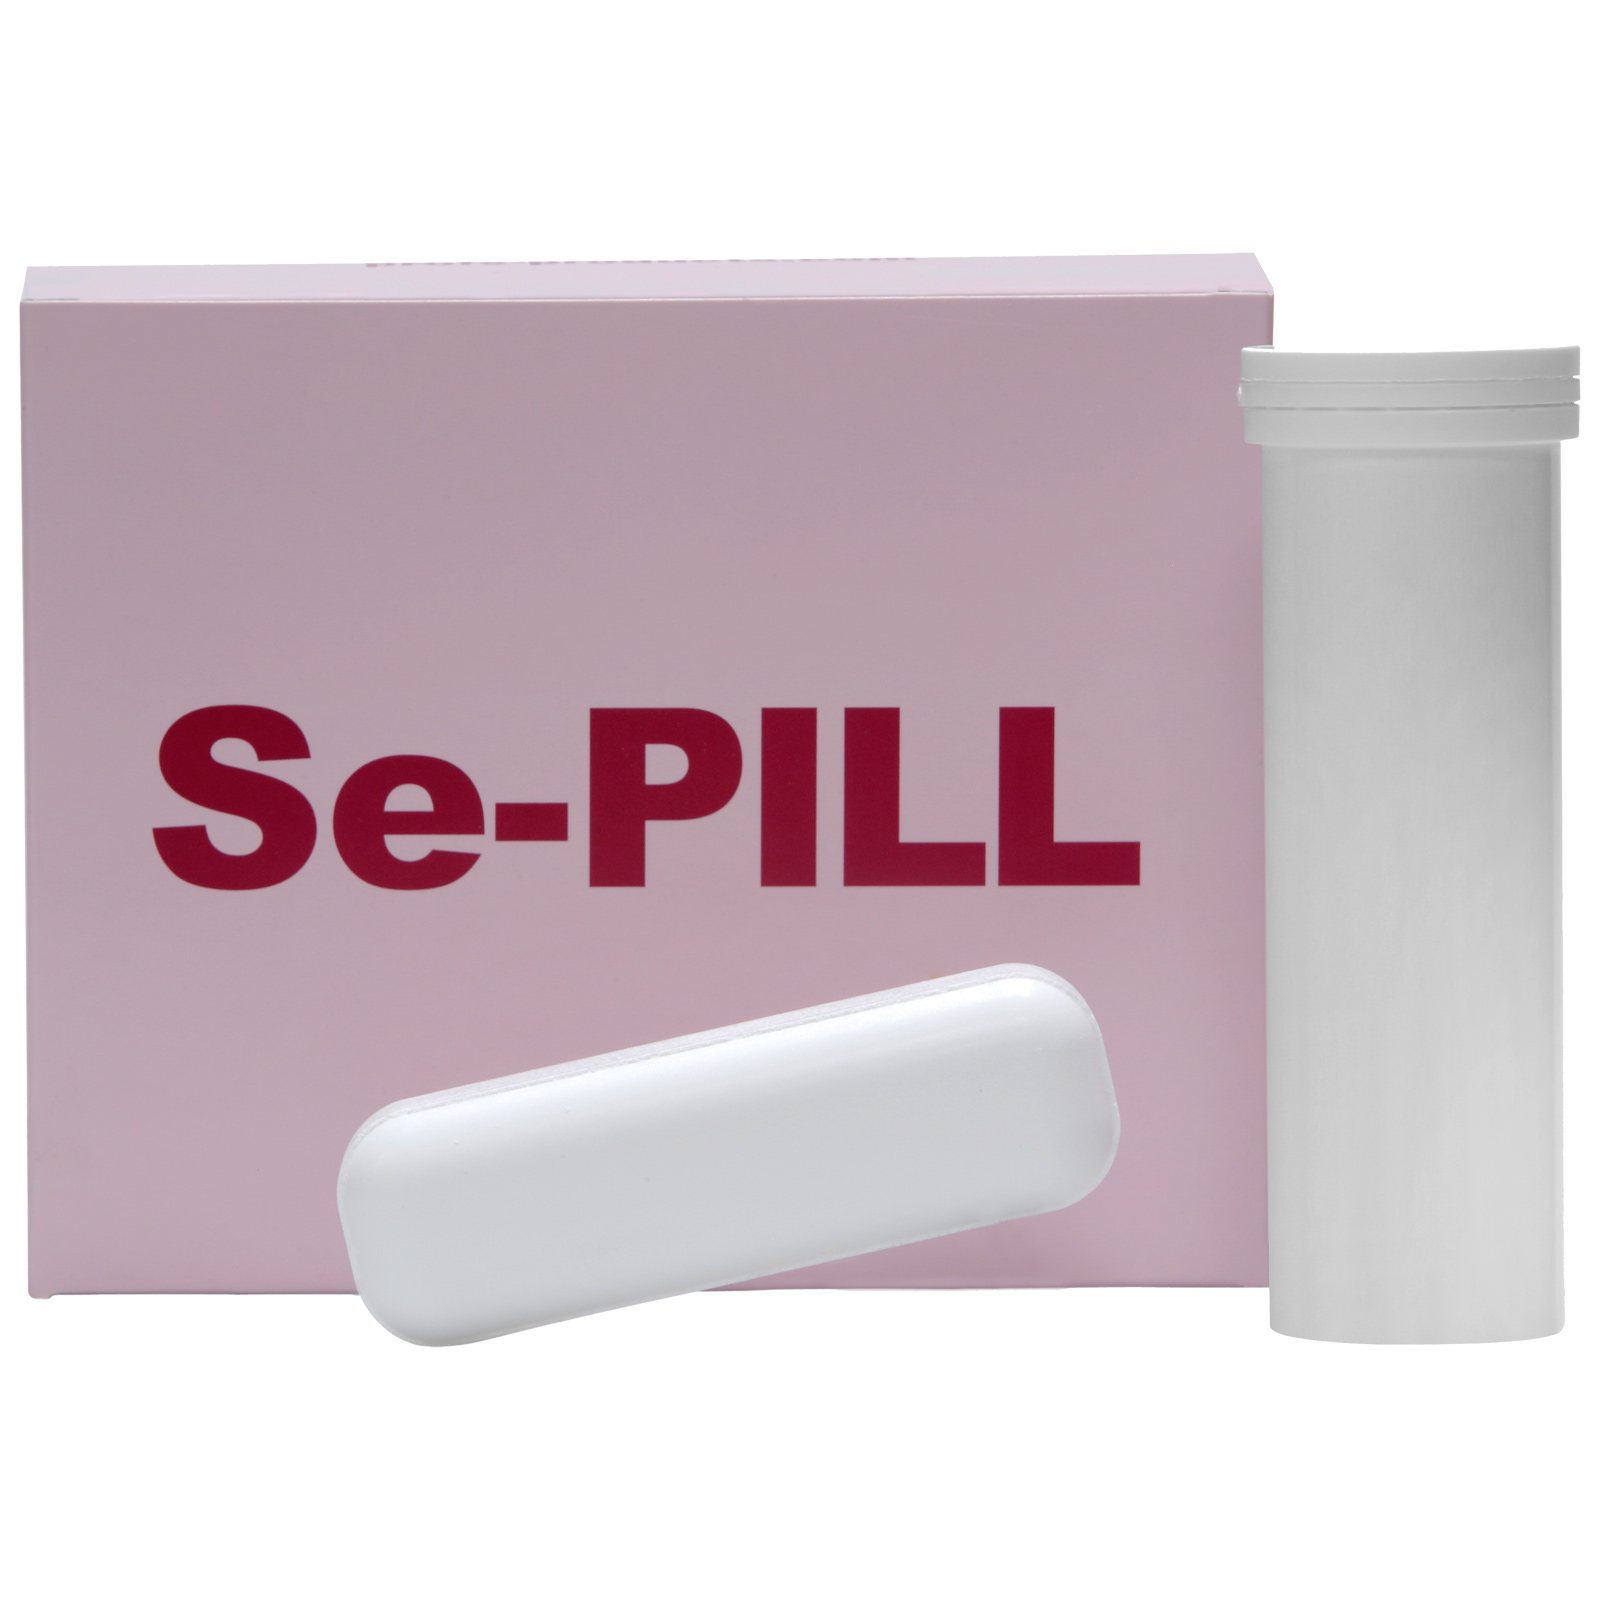 Se-PILL împotriva deficienței de seleniu 4 x 80 g